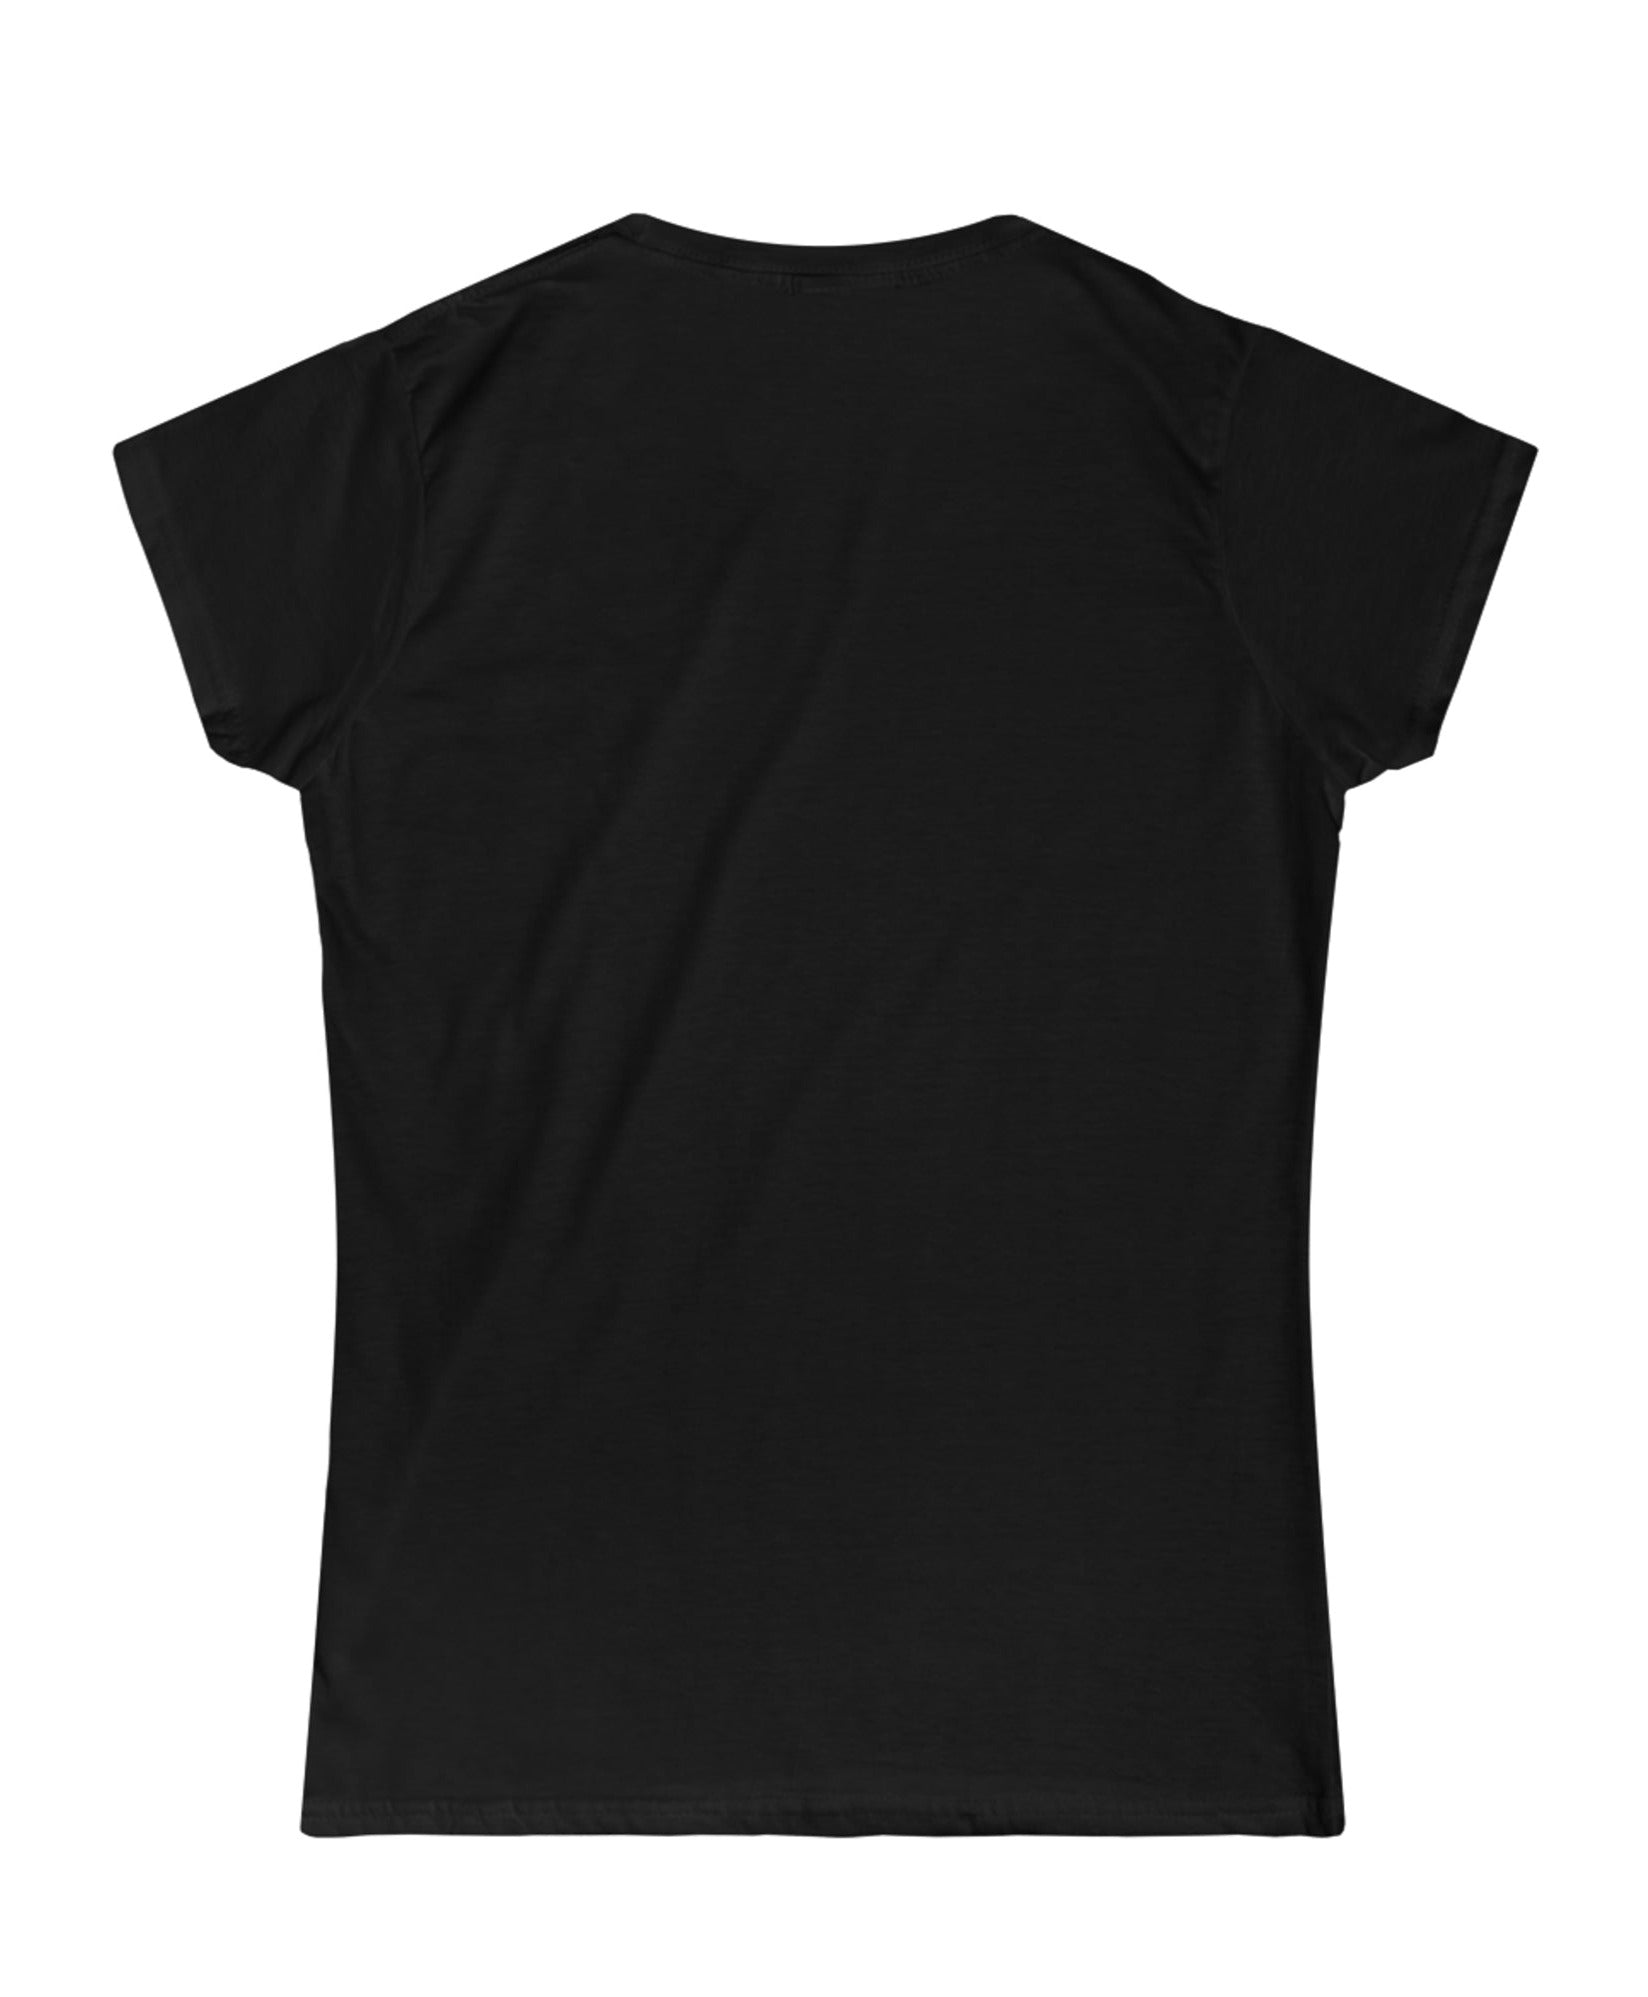 'Black Entrepreneur Movement' Women's Short Sleeve T-Shirt